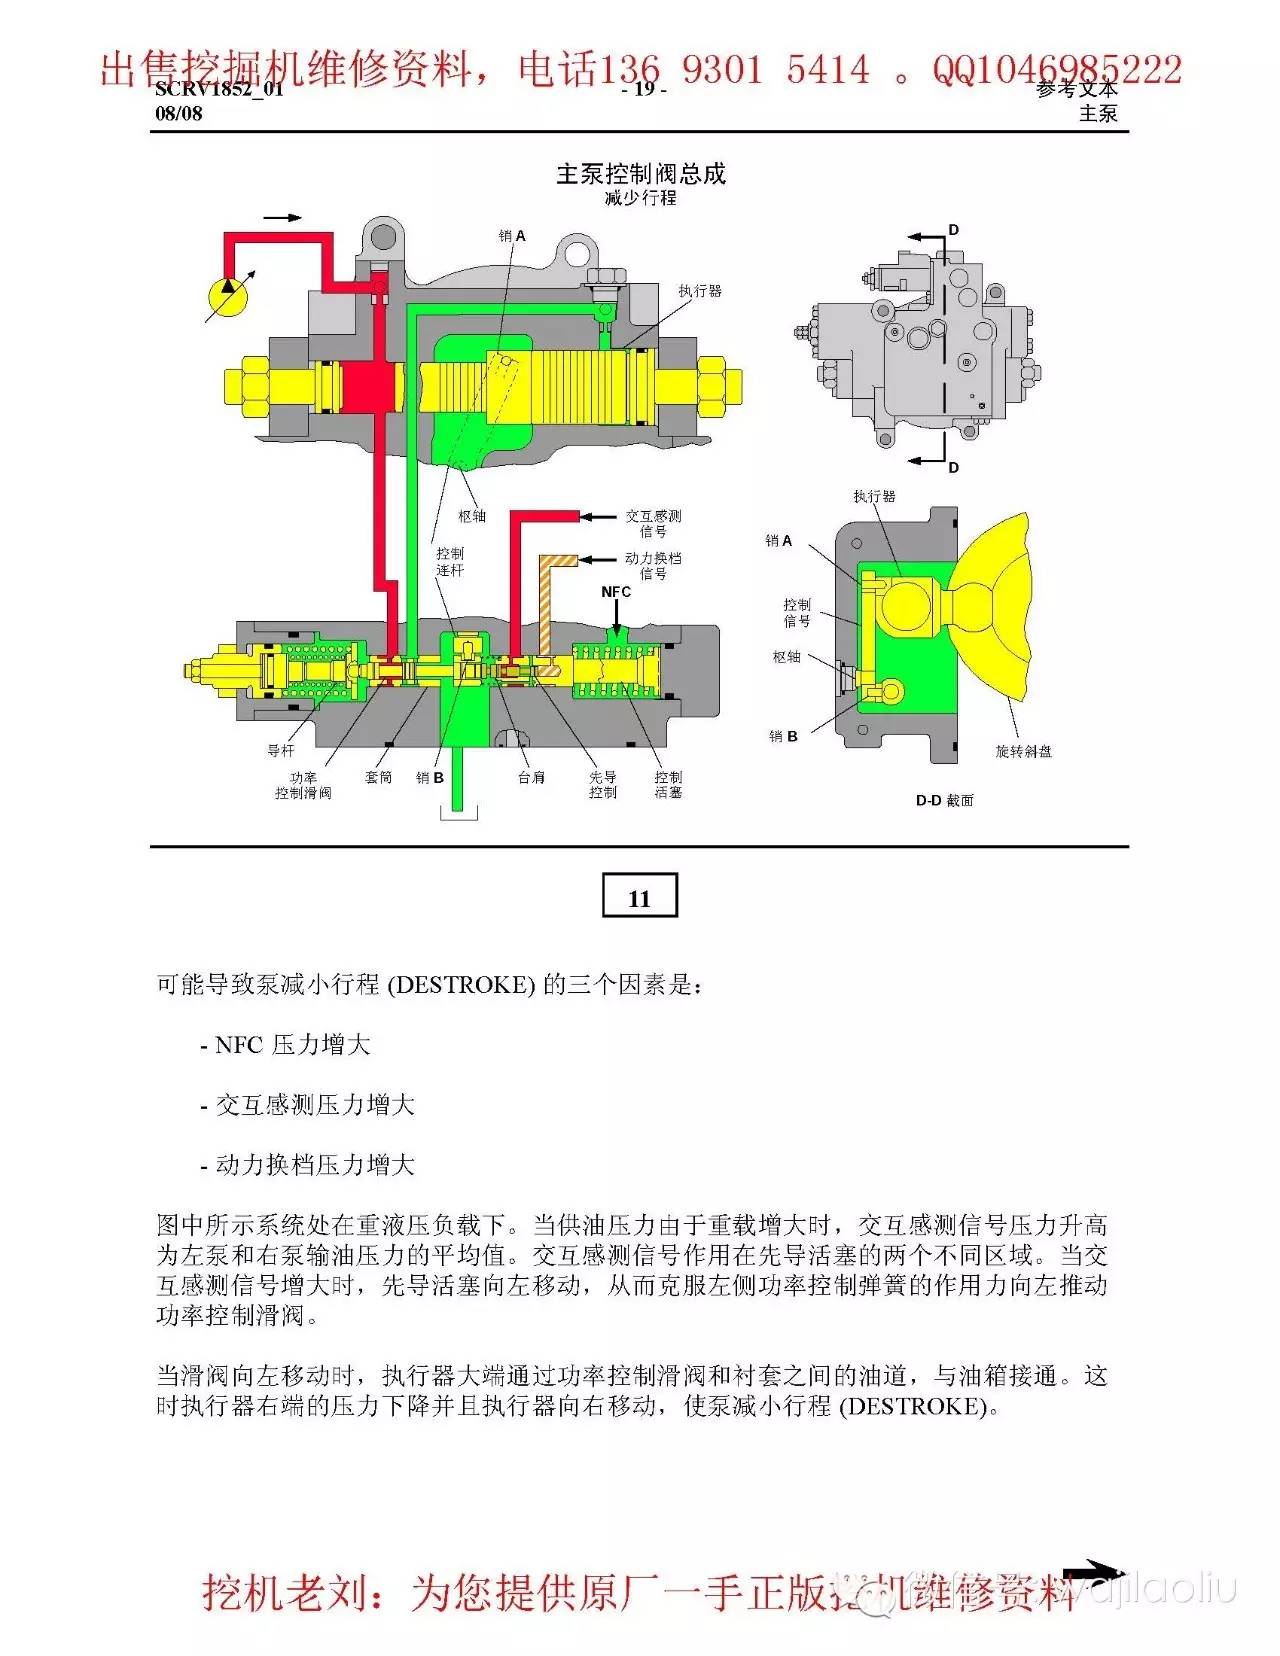 中文卡特液压泵,控制阀,工作原理图,部件功能讲解